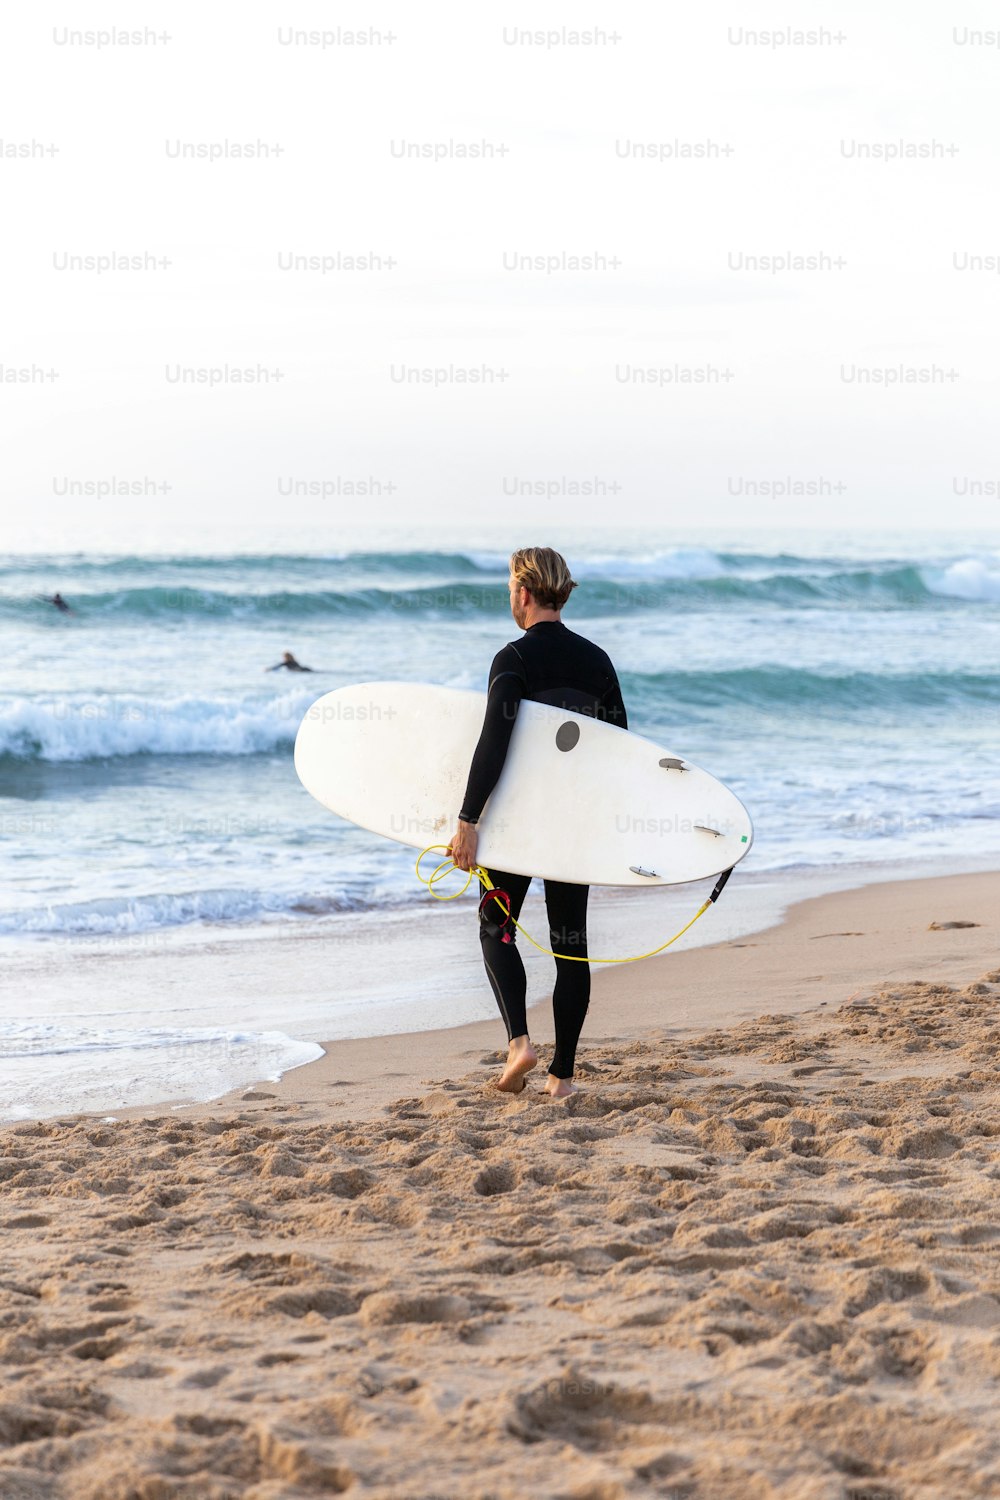 Un hombre con traje de neopreno cargando una tabla de surf en una playa